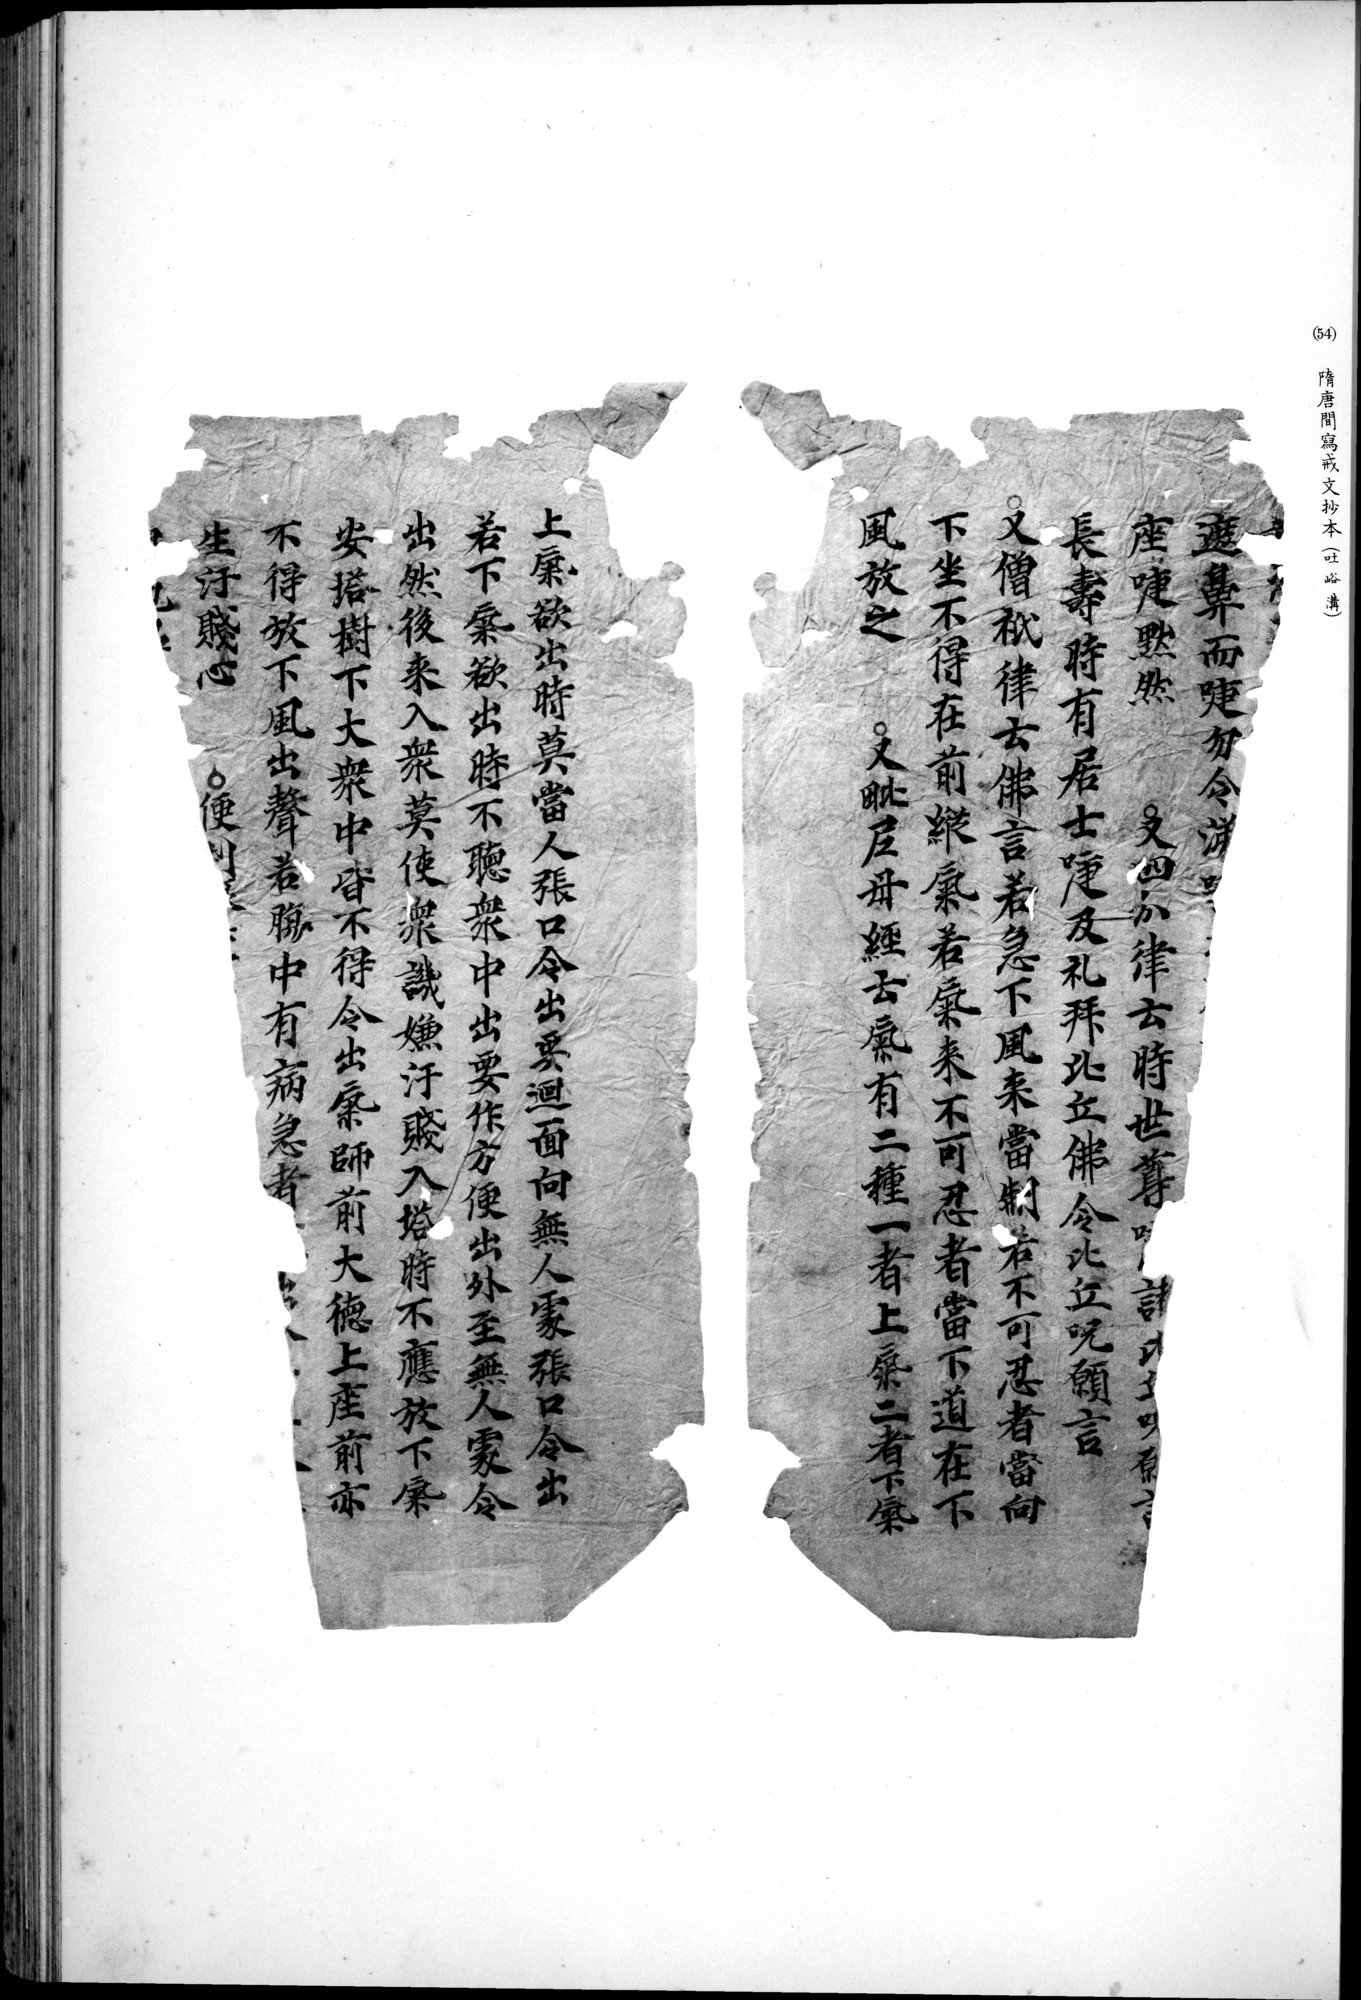 西域考古図譜 : vol.2 / 123 ページ（白黒高解像度画像）